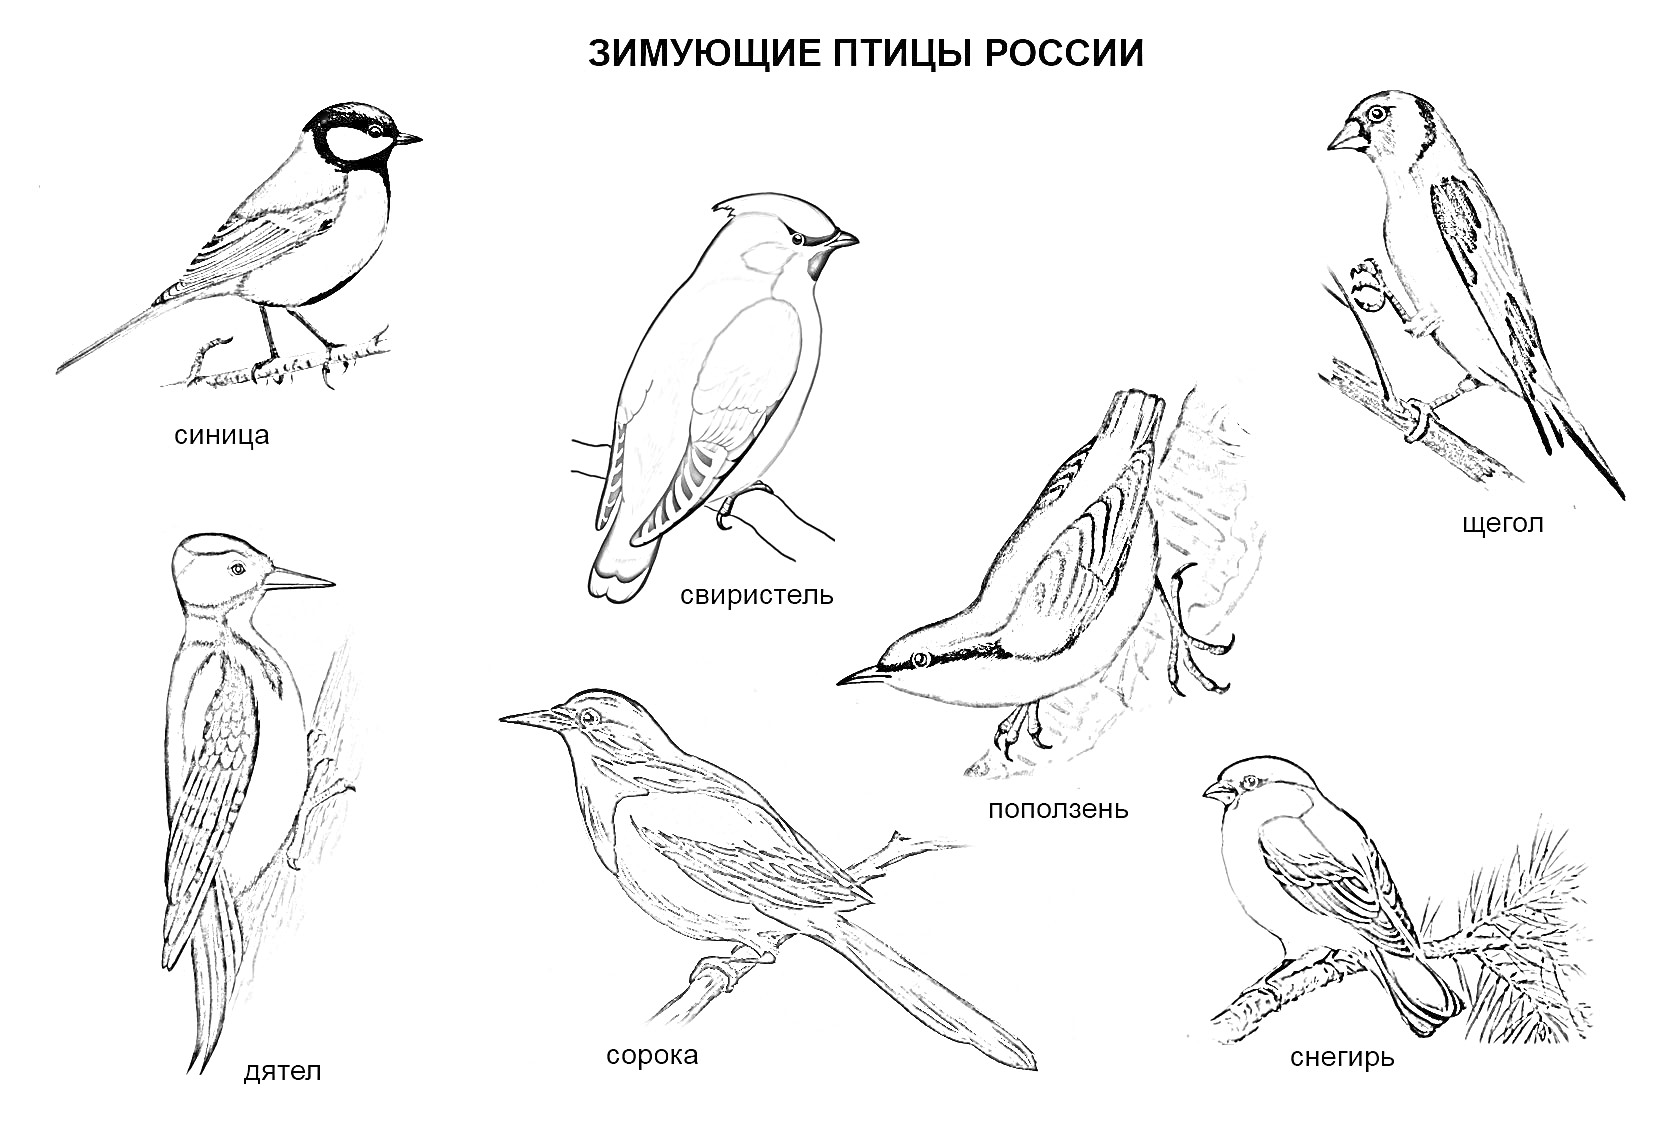 Раскраска Зимующие птицы России: зяблик, свиристель, синица, дятел, сорока, поползень, снегирь